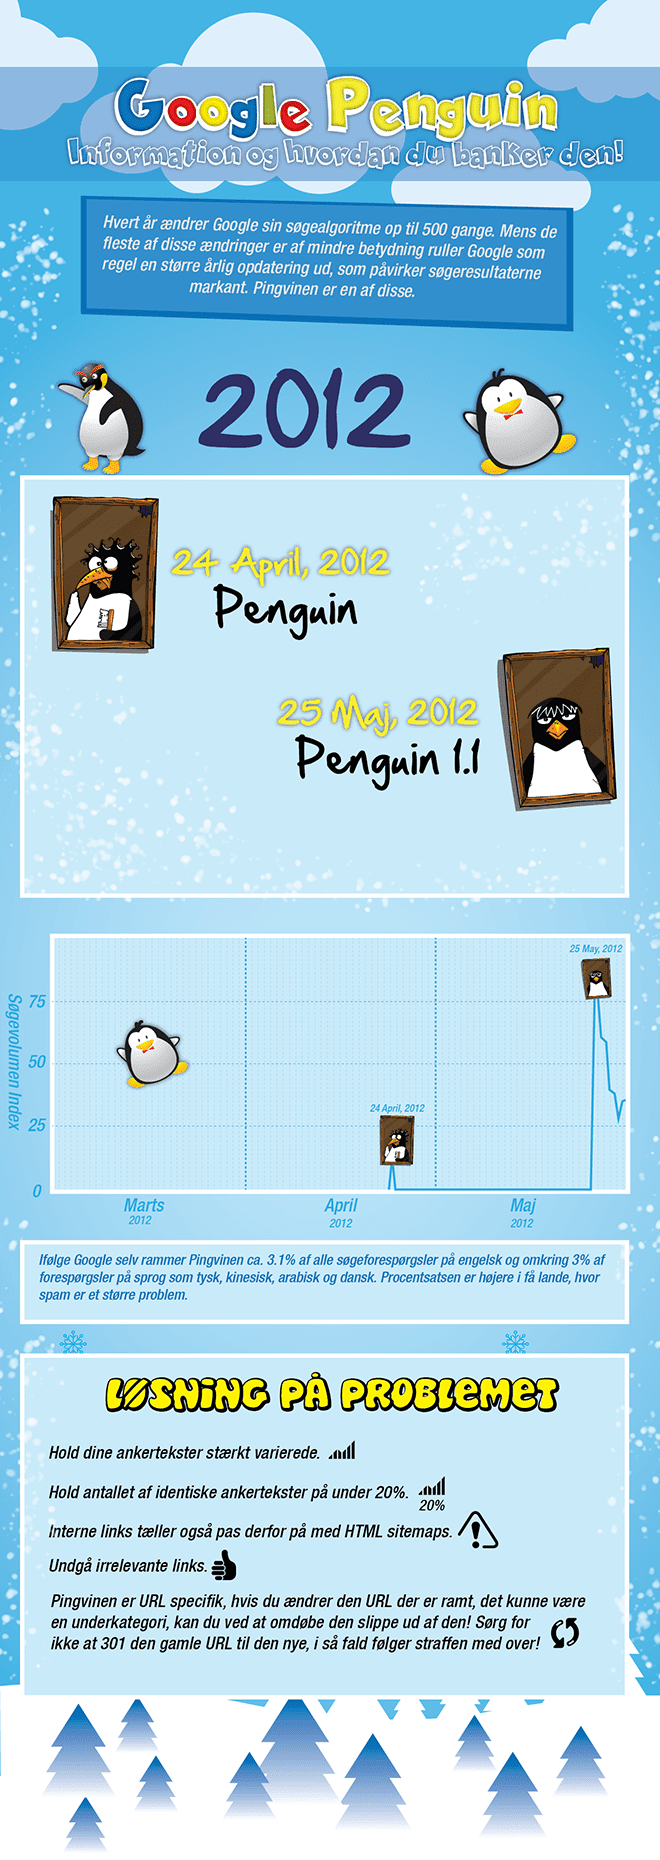 pingvin fra google